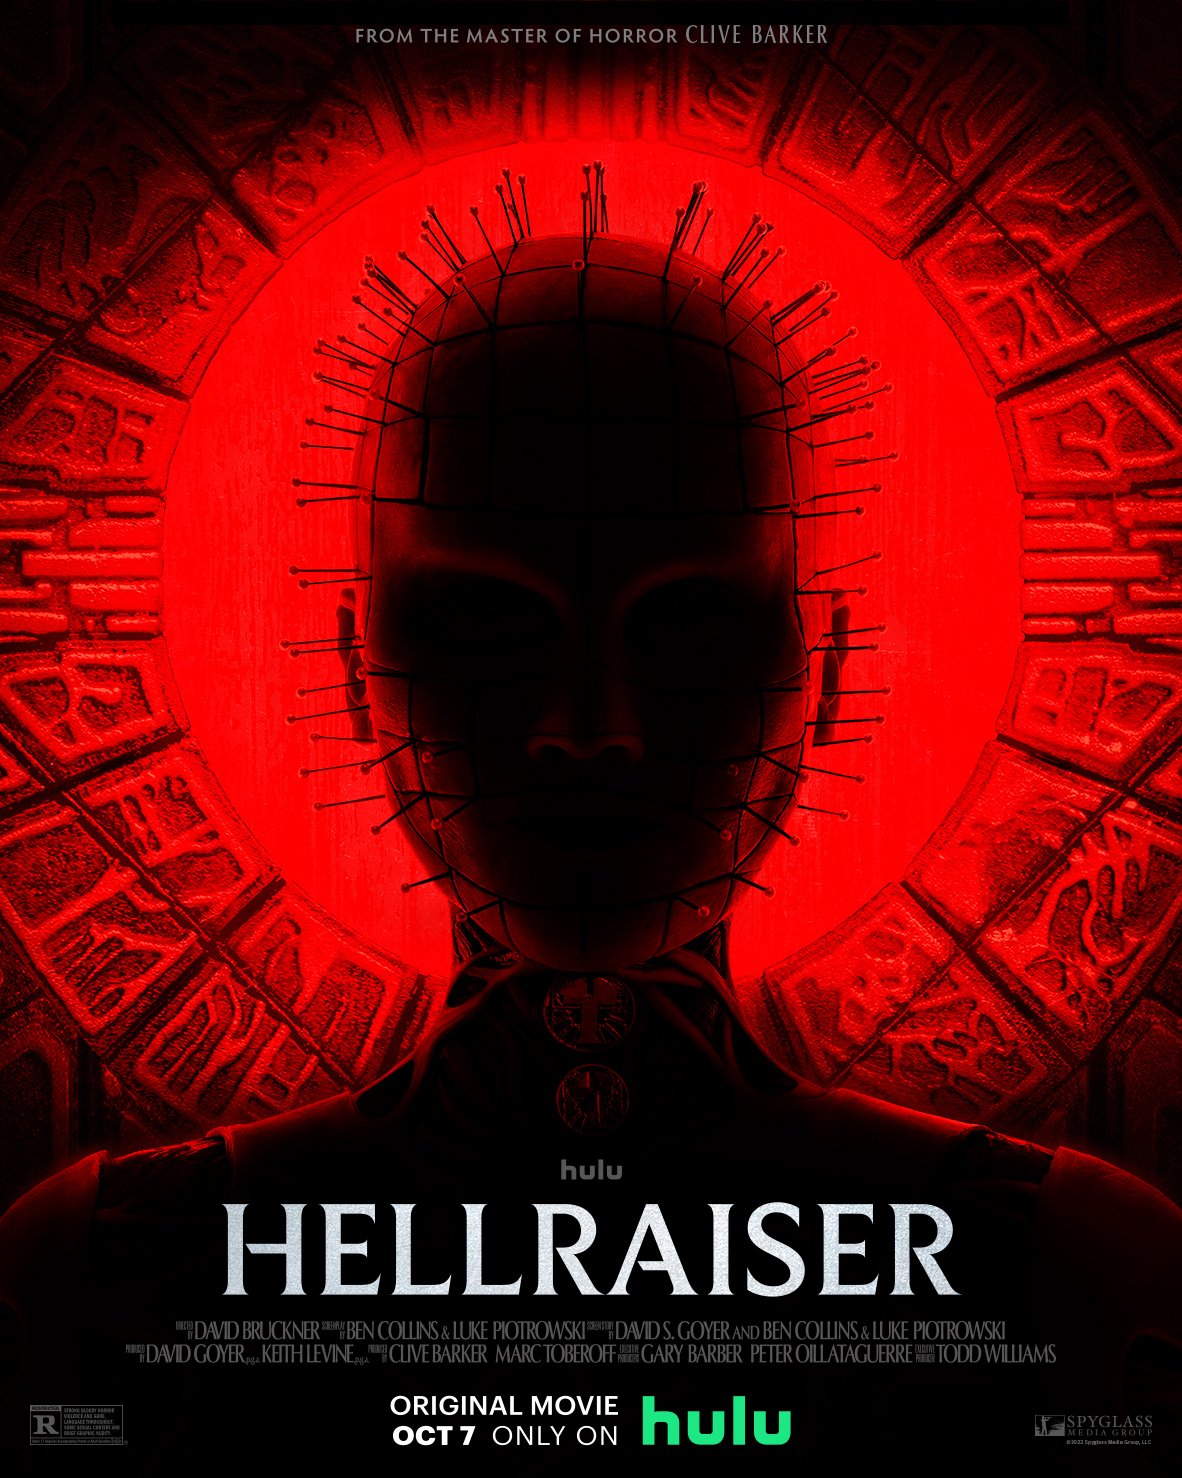 Hellraiser trailer